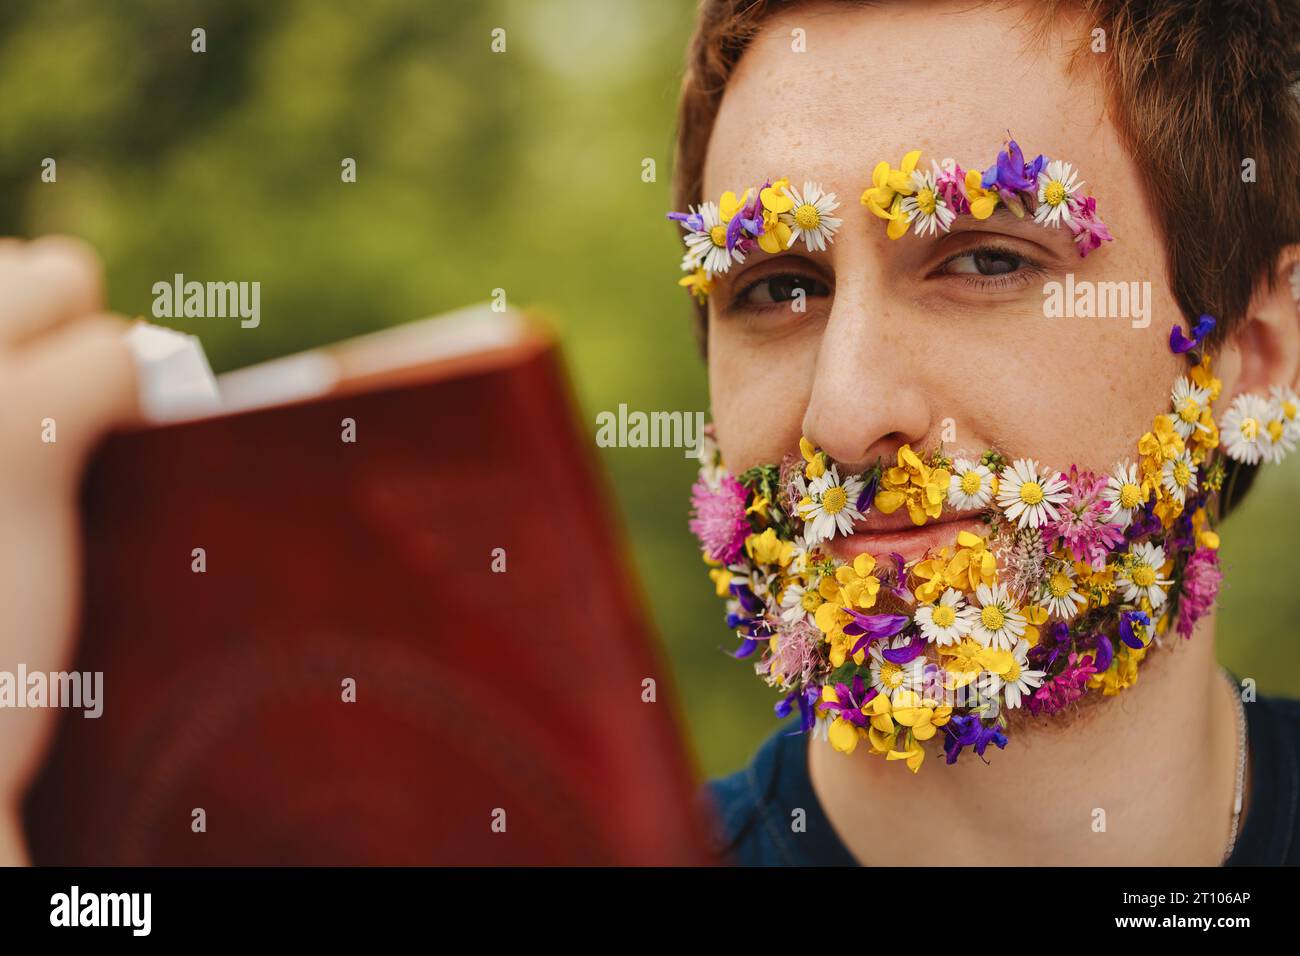 Tief im Wald zeigt ein junger Mann Frühlingsblumen anstelle von Gesichtshaaren, liest ein altes ledergebundenes Buch, das mit der Natur und dem li in Einklang steht Stockfoto